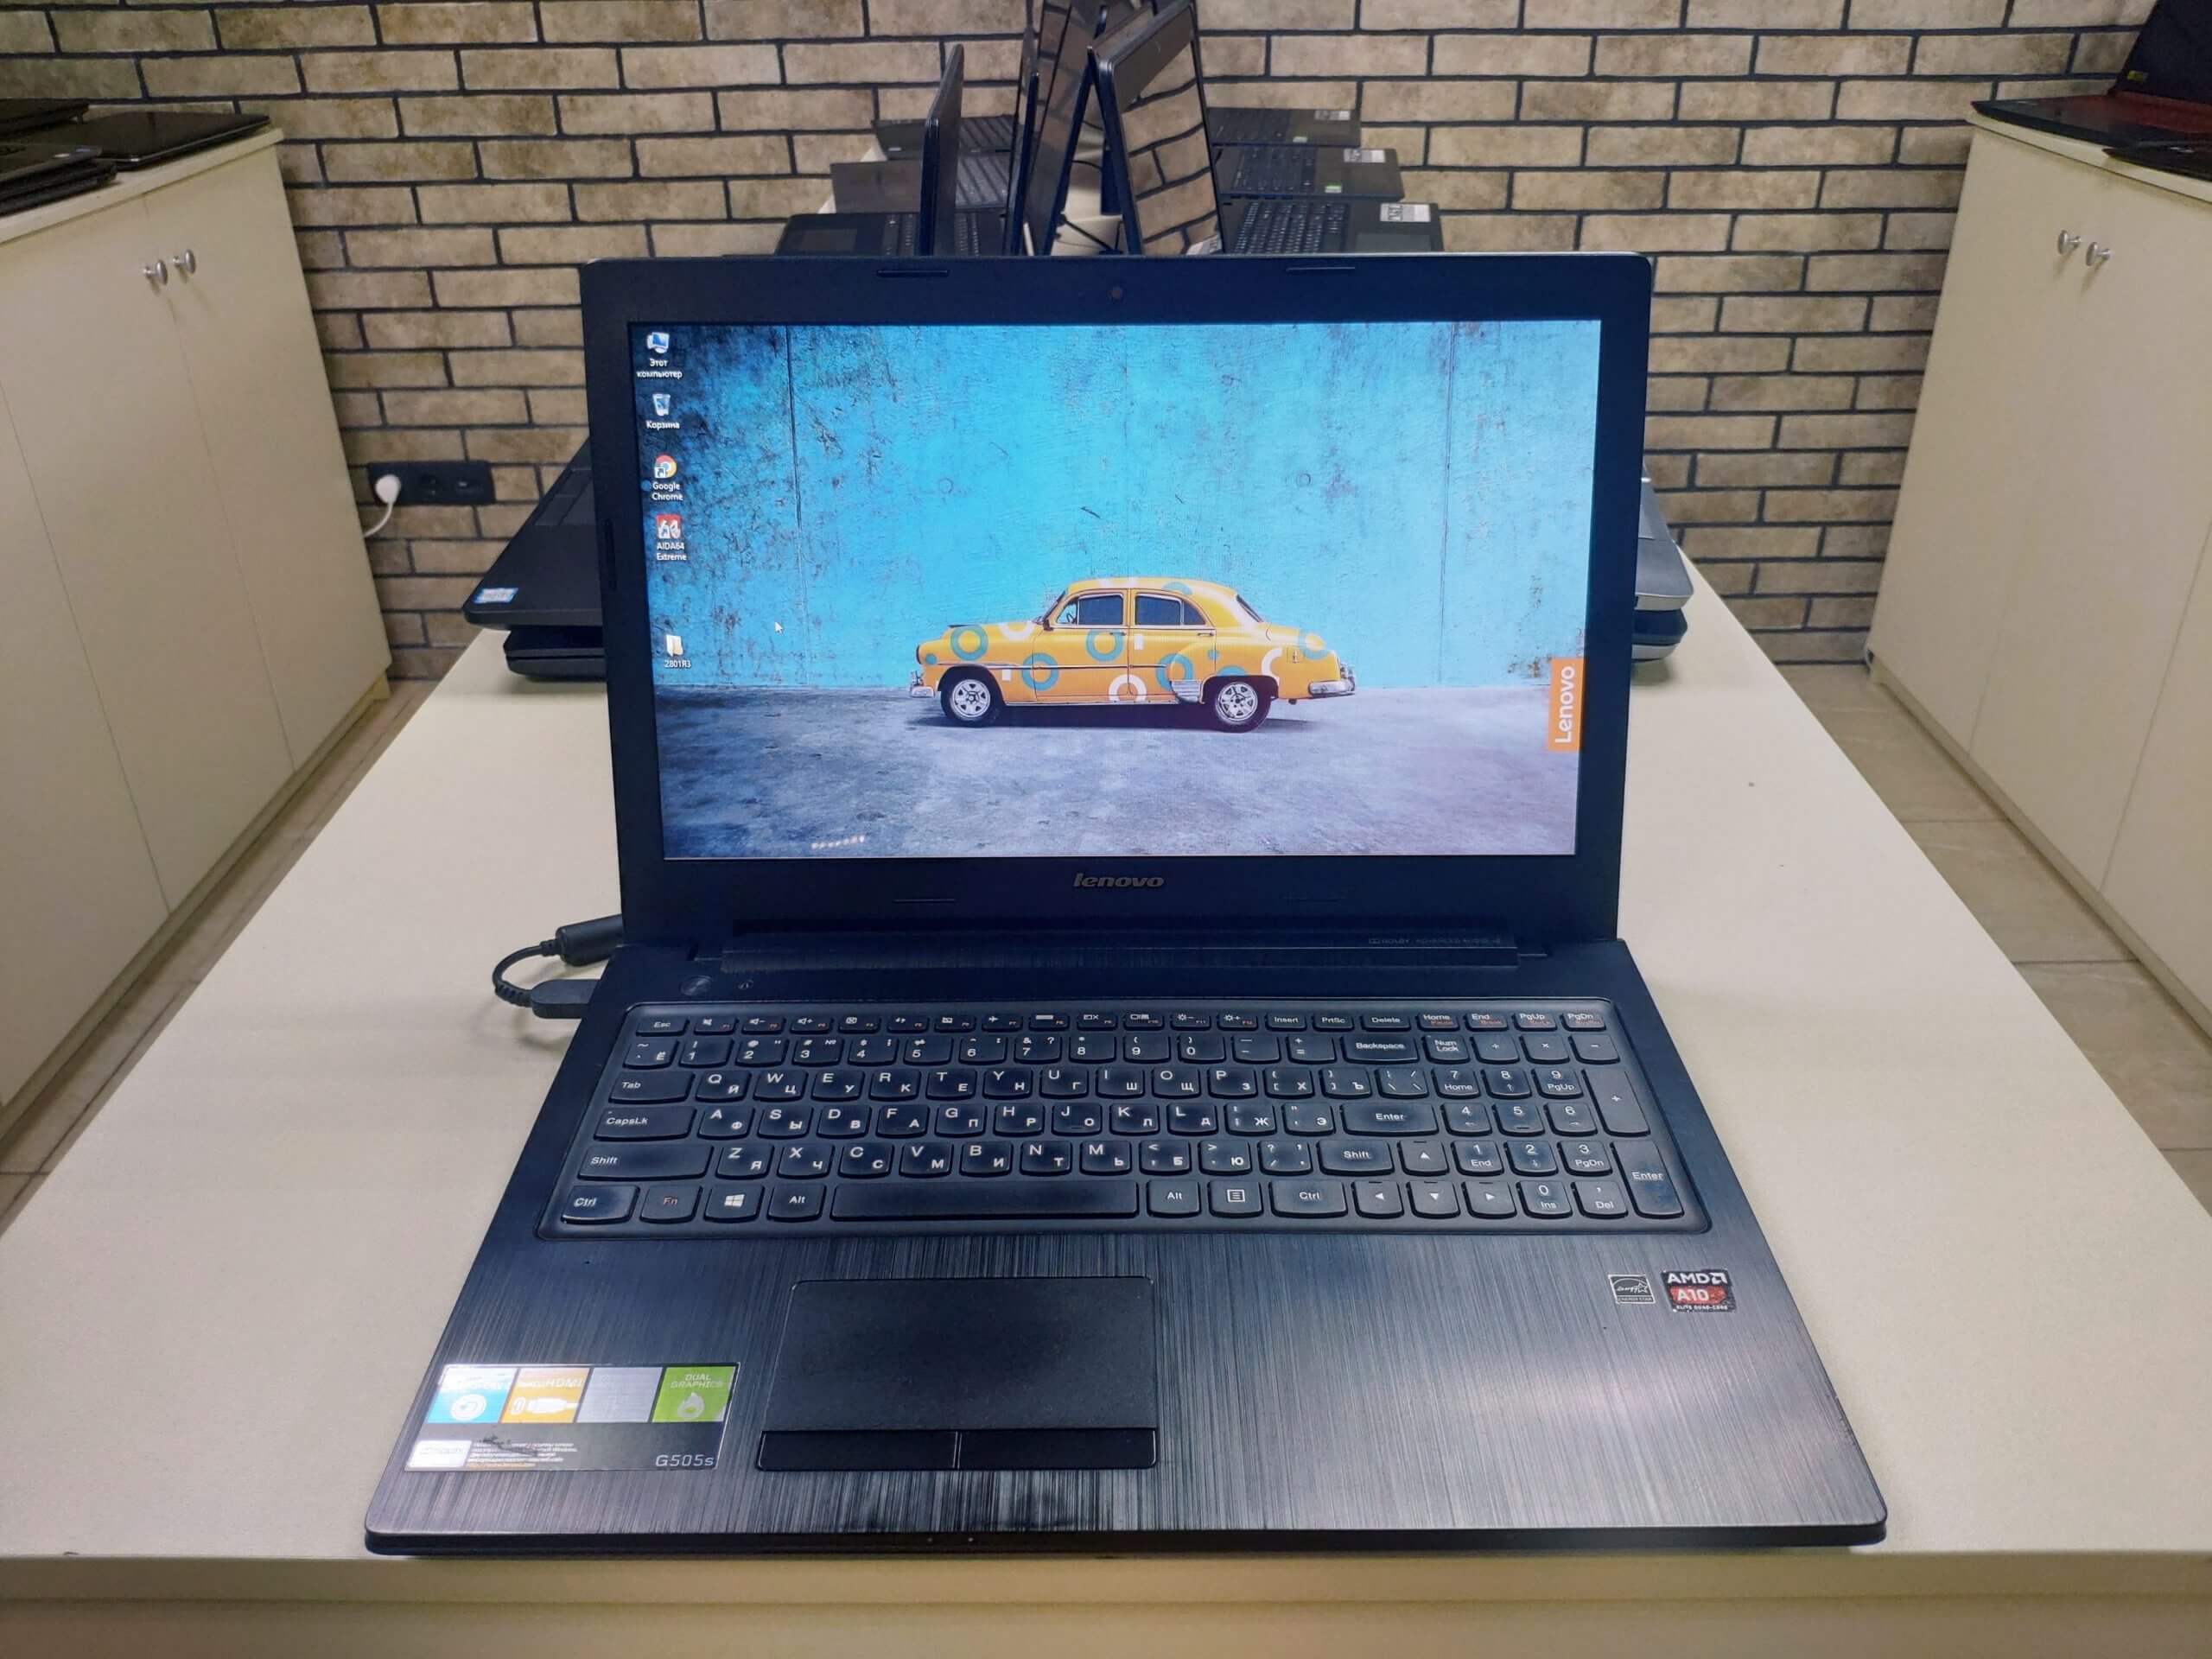 Ноутбук Lenovo Ideapad G500a Купить В Харькове